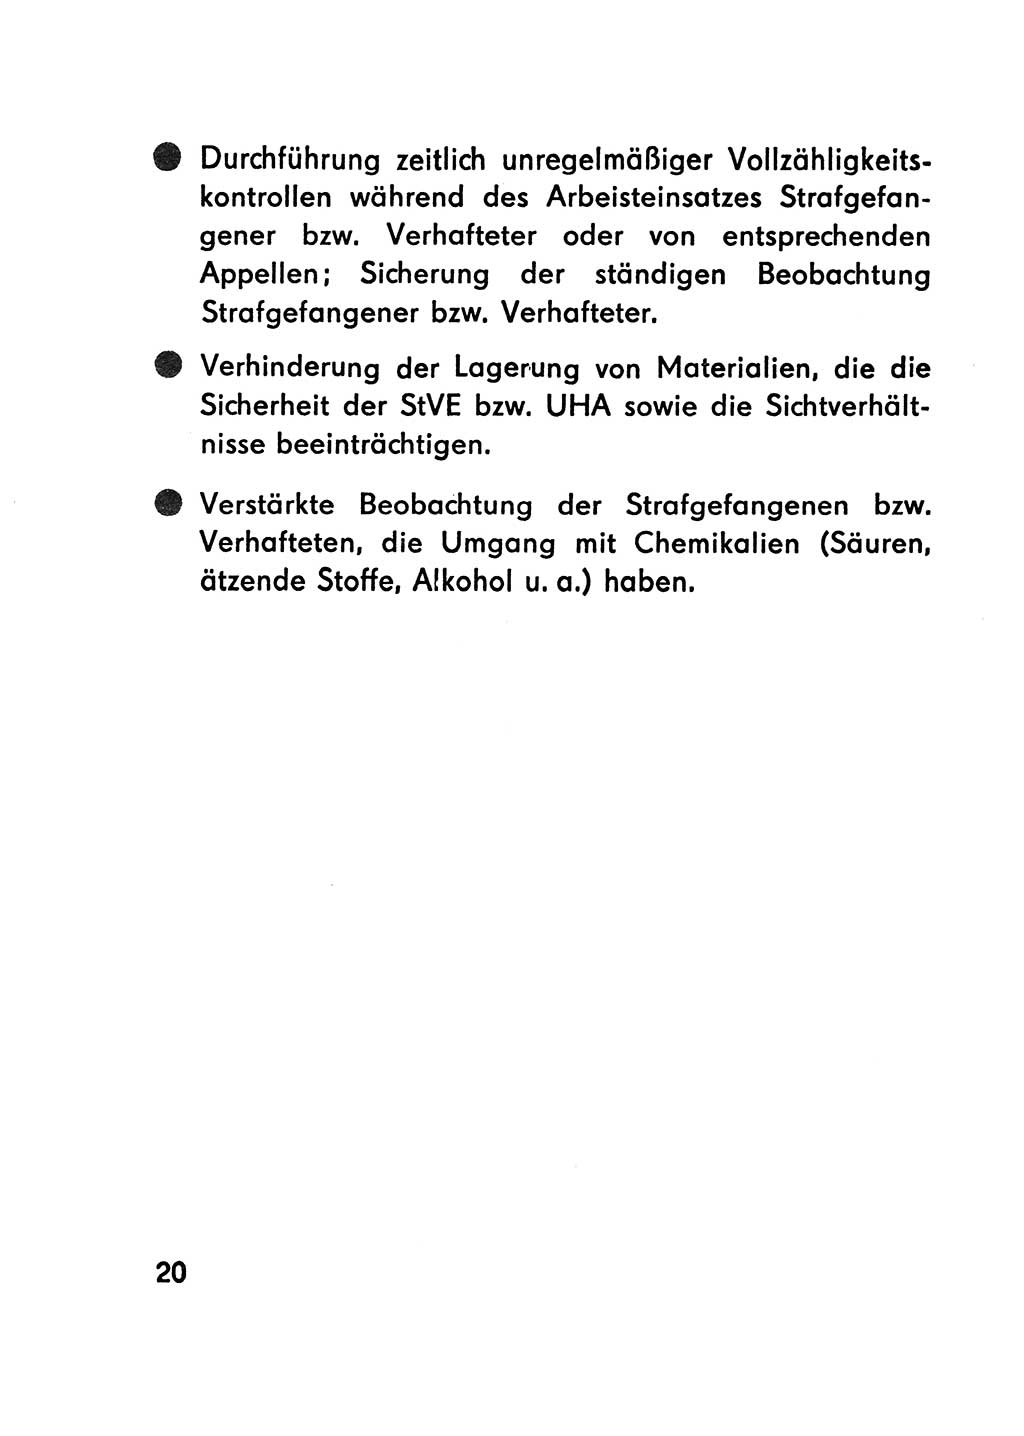 Merkbuch für SV-Angehörige [Strafvollzug (SV) Deutsche Demokratische Republik (DDR)] 1975, Seite 20 (SV-Angeh. DDR 1975, S. 20)